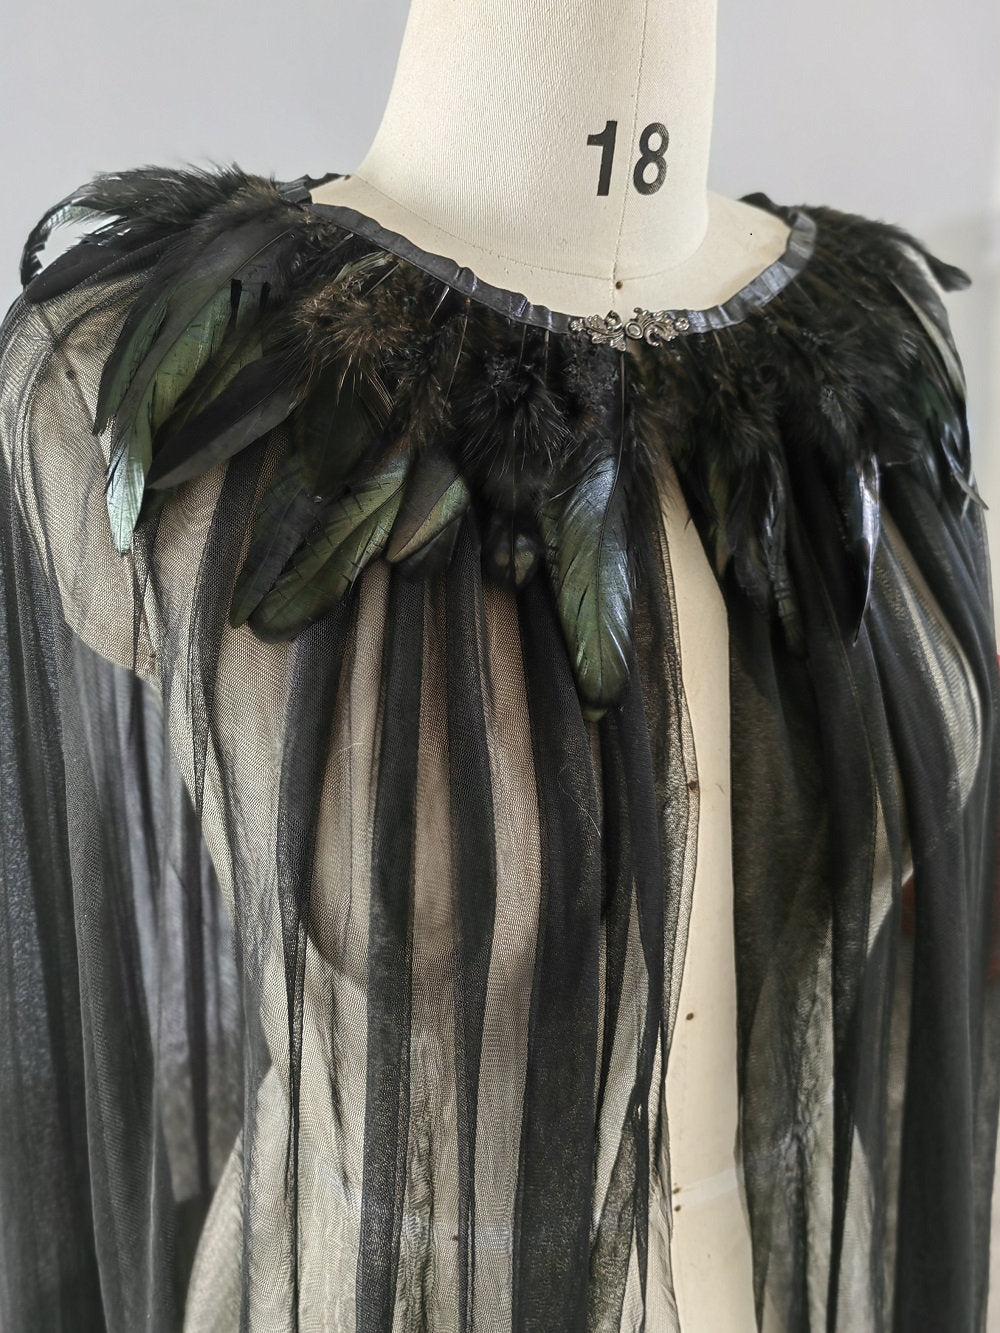 Gothic Black Veil Cape Feathers Along Shoulder Wedding Veil Bridal Cape Unique Style